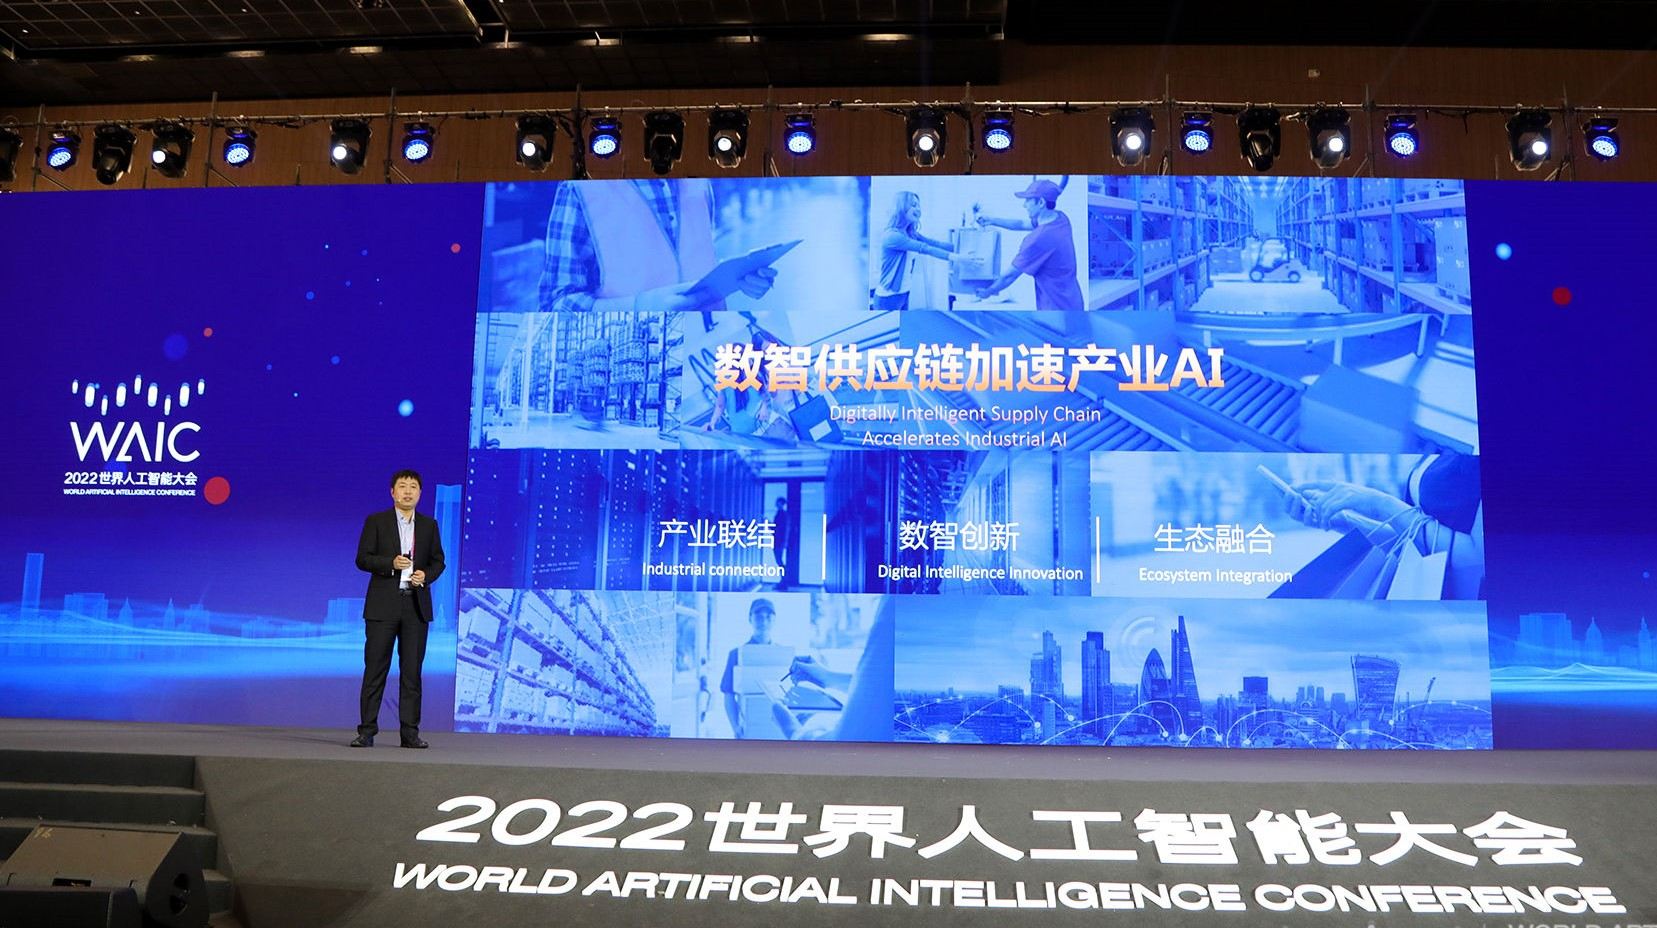 “数智供应链加速产业AI 京东云亮相2022WAIC展示人工智能全景布局